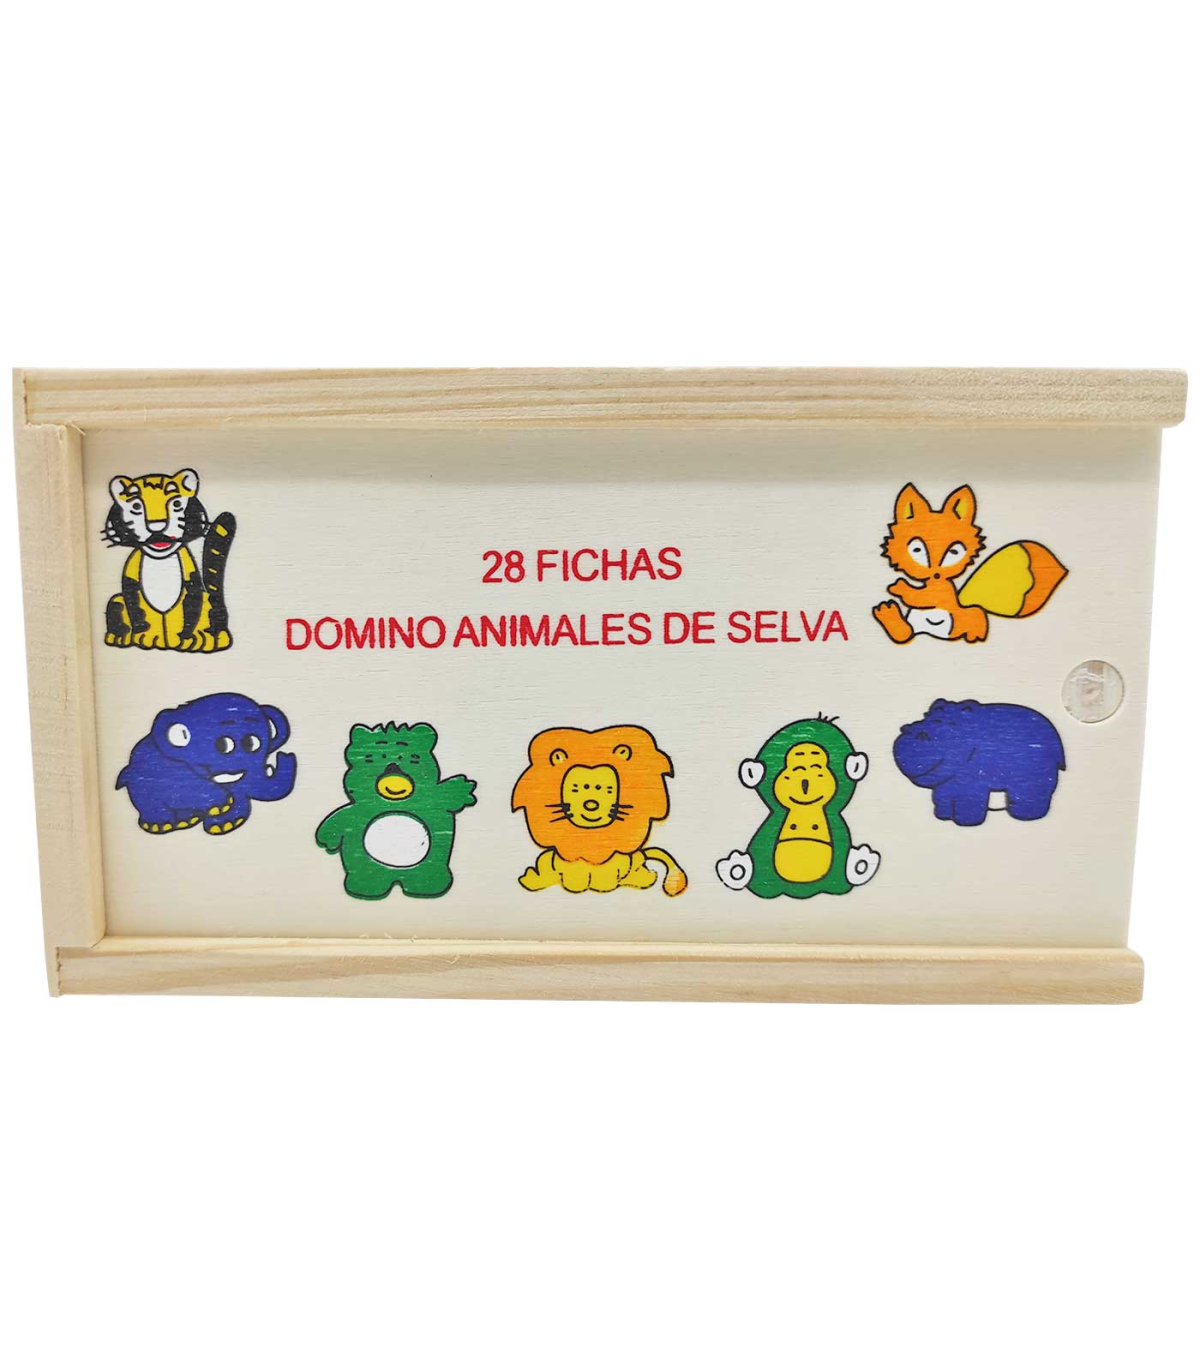 Tradineur - Dominó infantil Animales de Selva en caja de madera, 28  fichas, juego de mesa tradicional para niños, diversión, 1